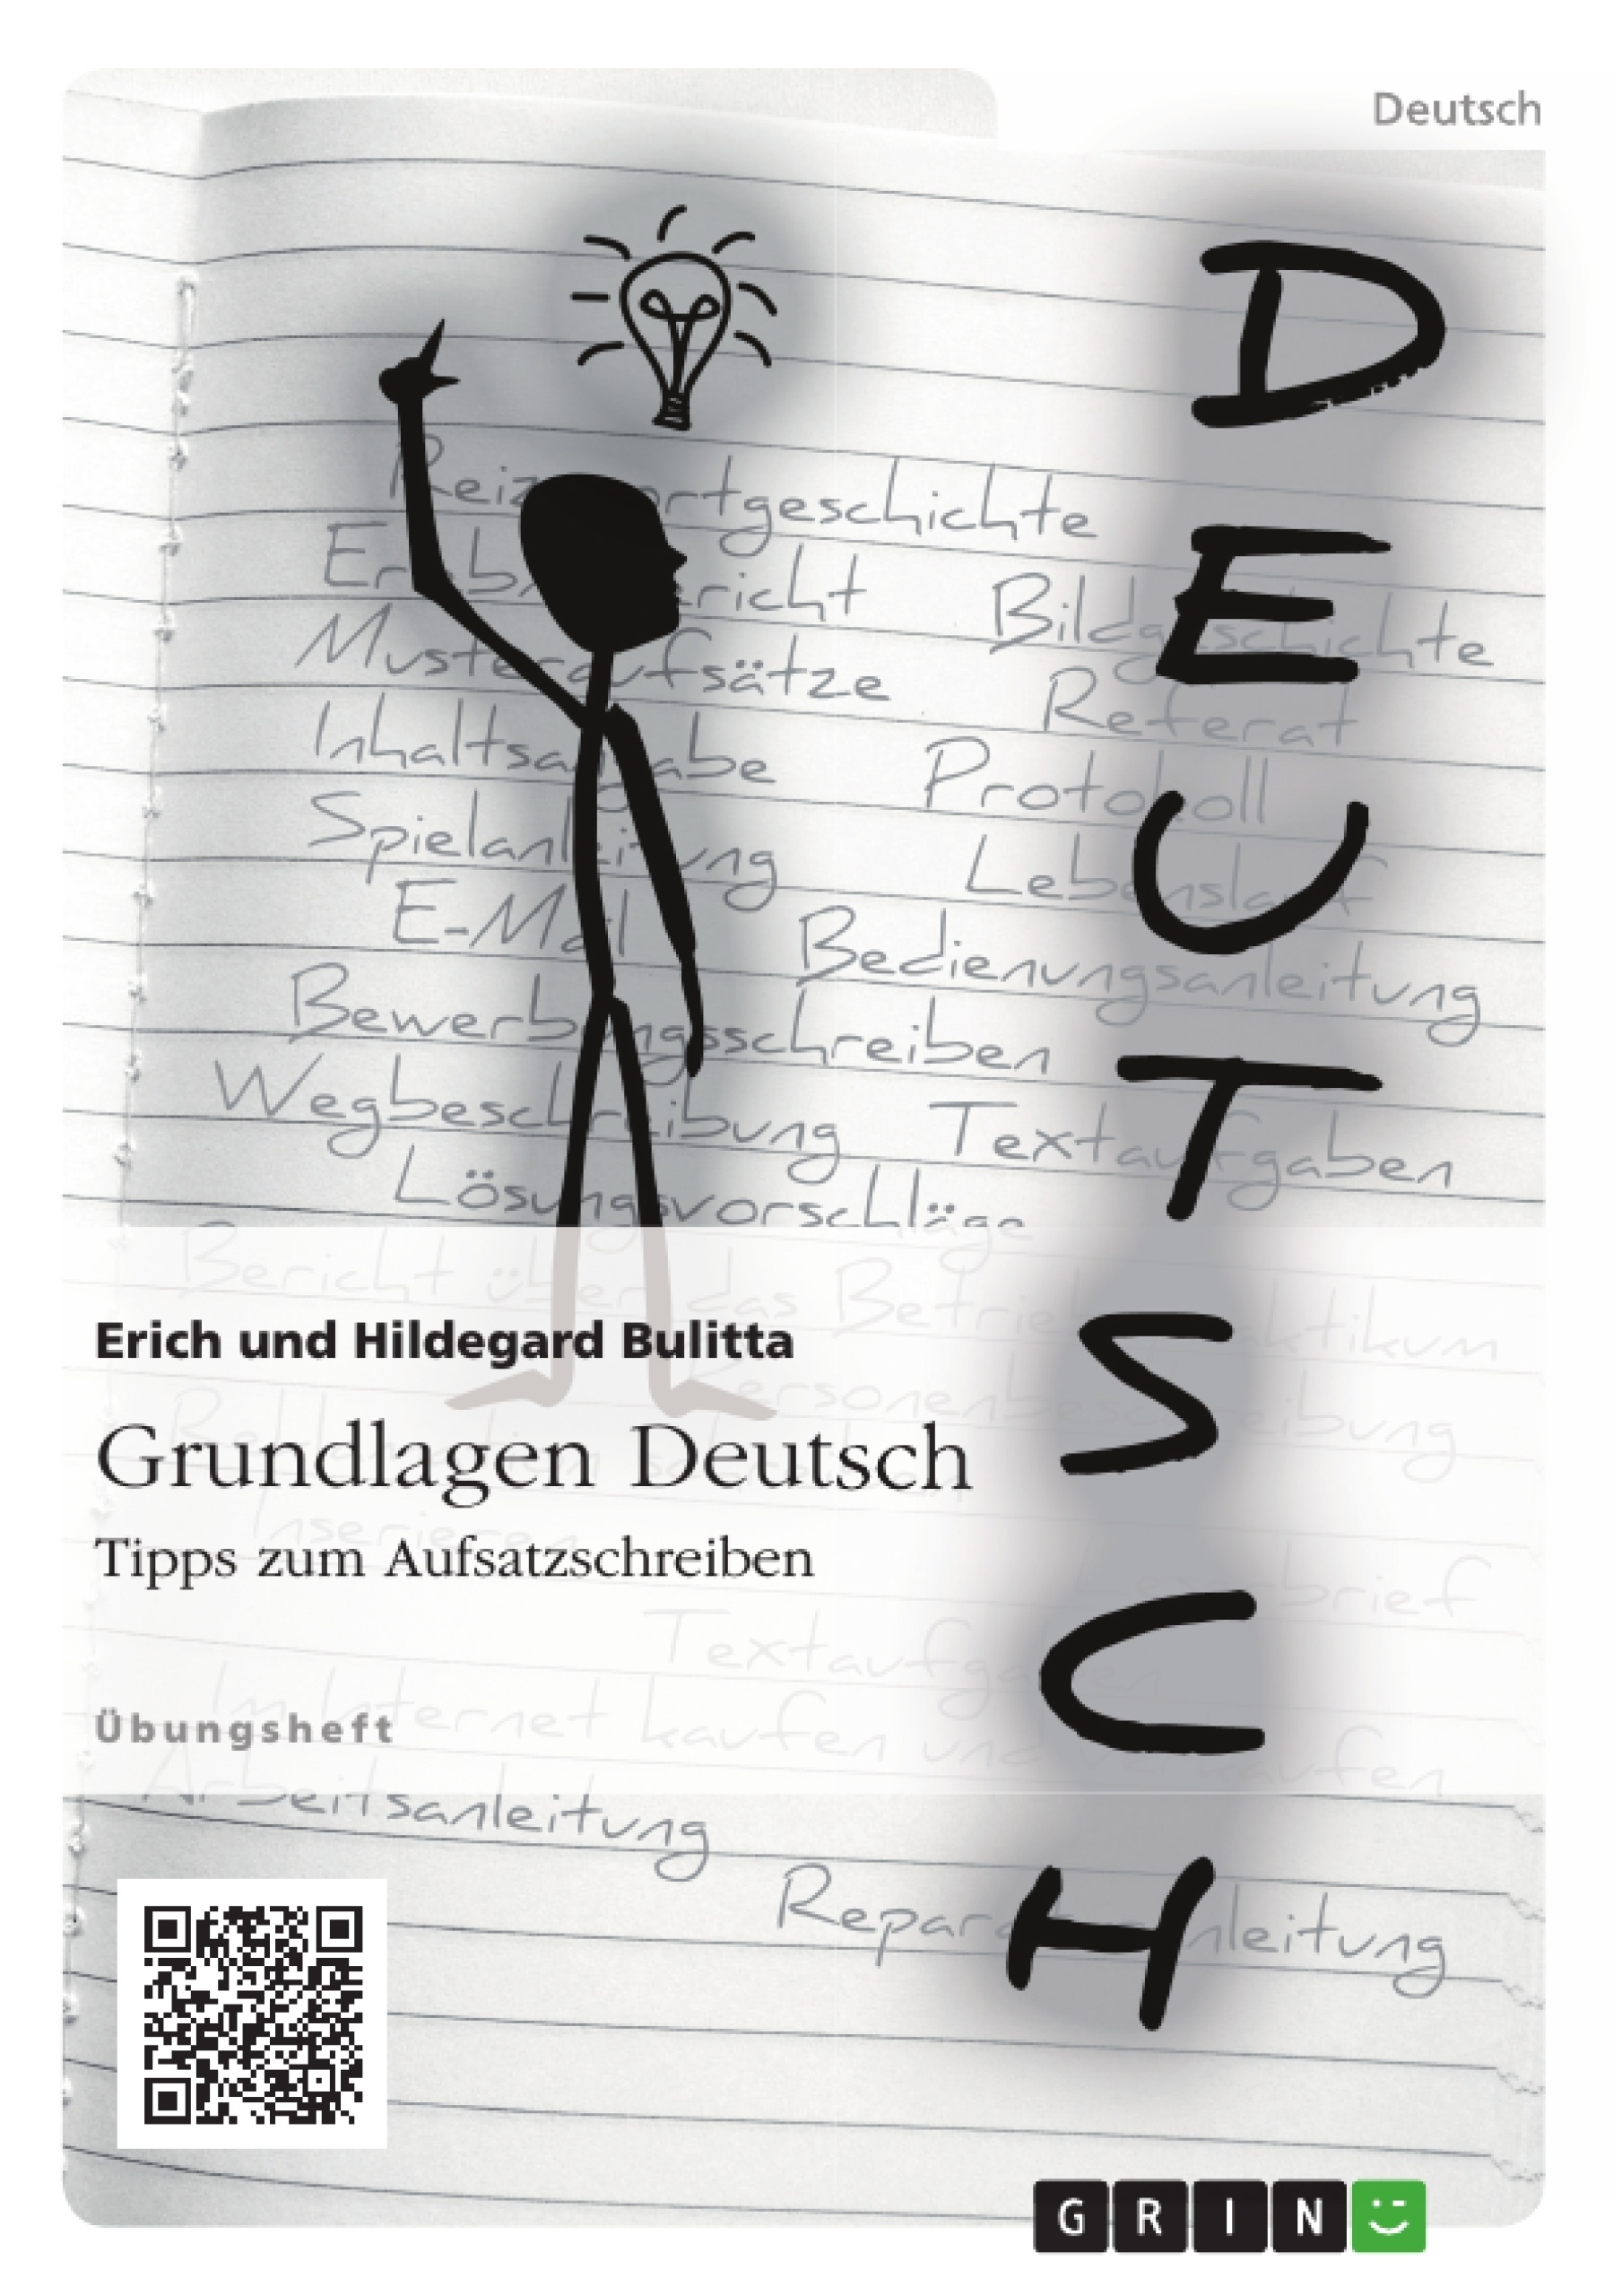 Title: Grundlagen Deutsch: Tipps zum Aufsatzschreiben